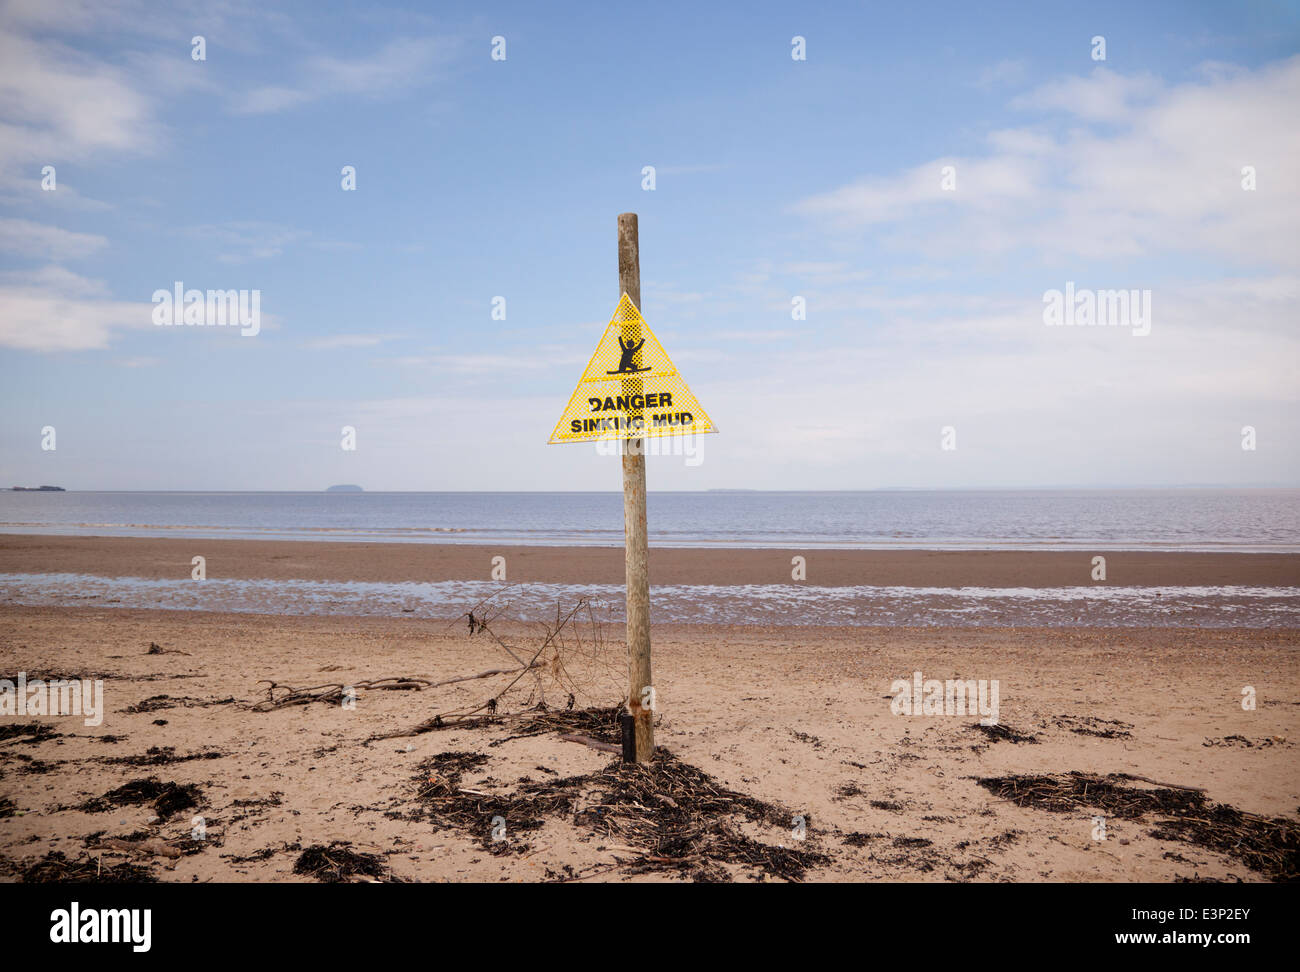 Gefahr sinkender Schlamm Schild, Sand Bay, Kewstoke, Weston-Super-Mare, Somerset, England, Großbritannien Stockfoto